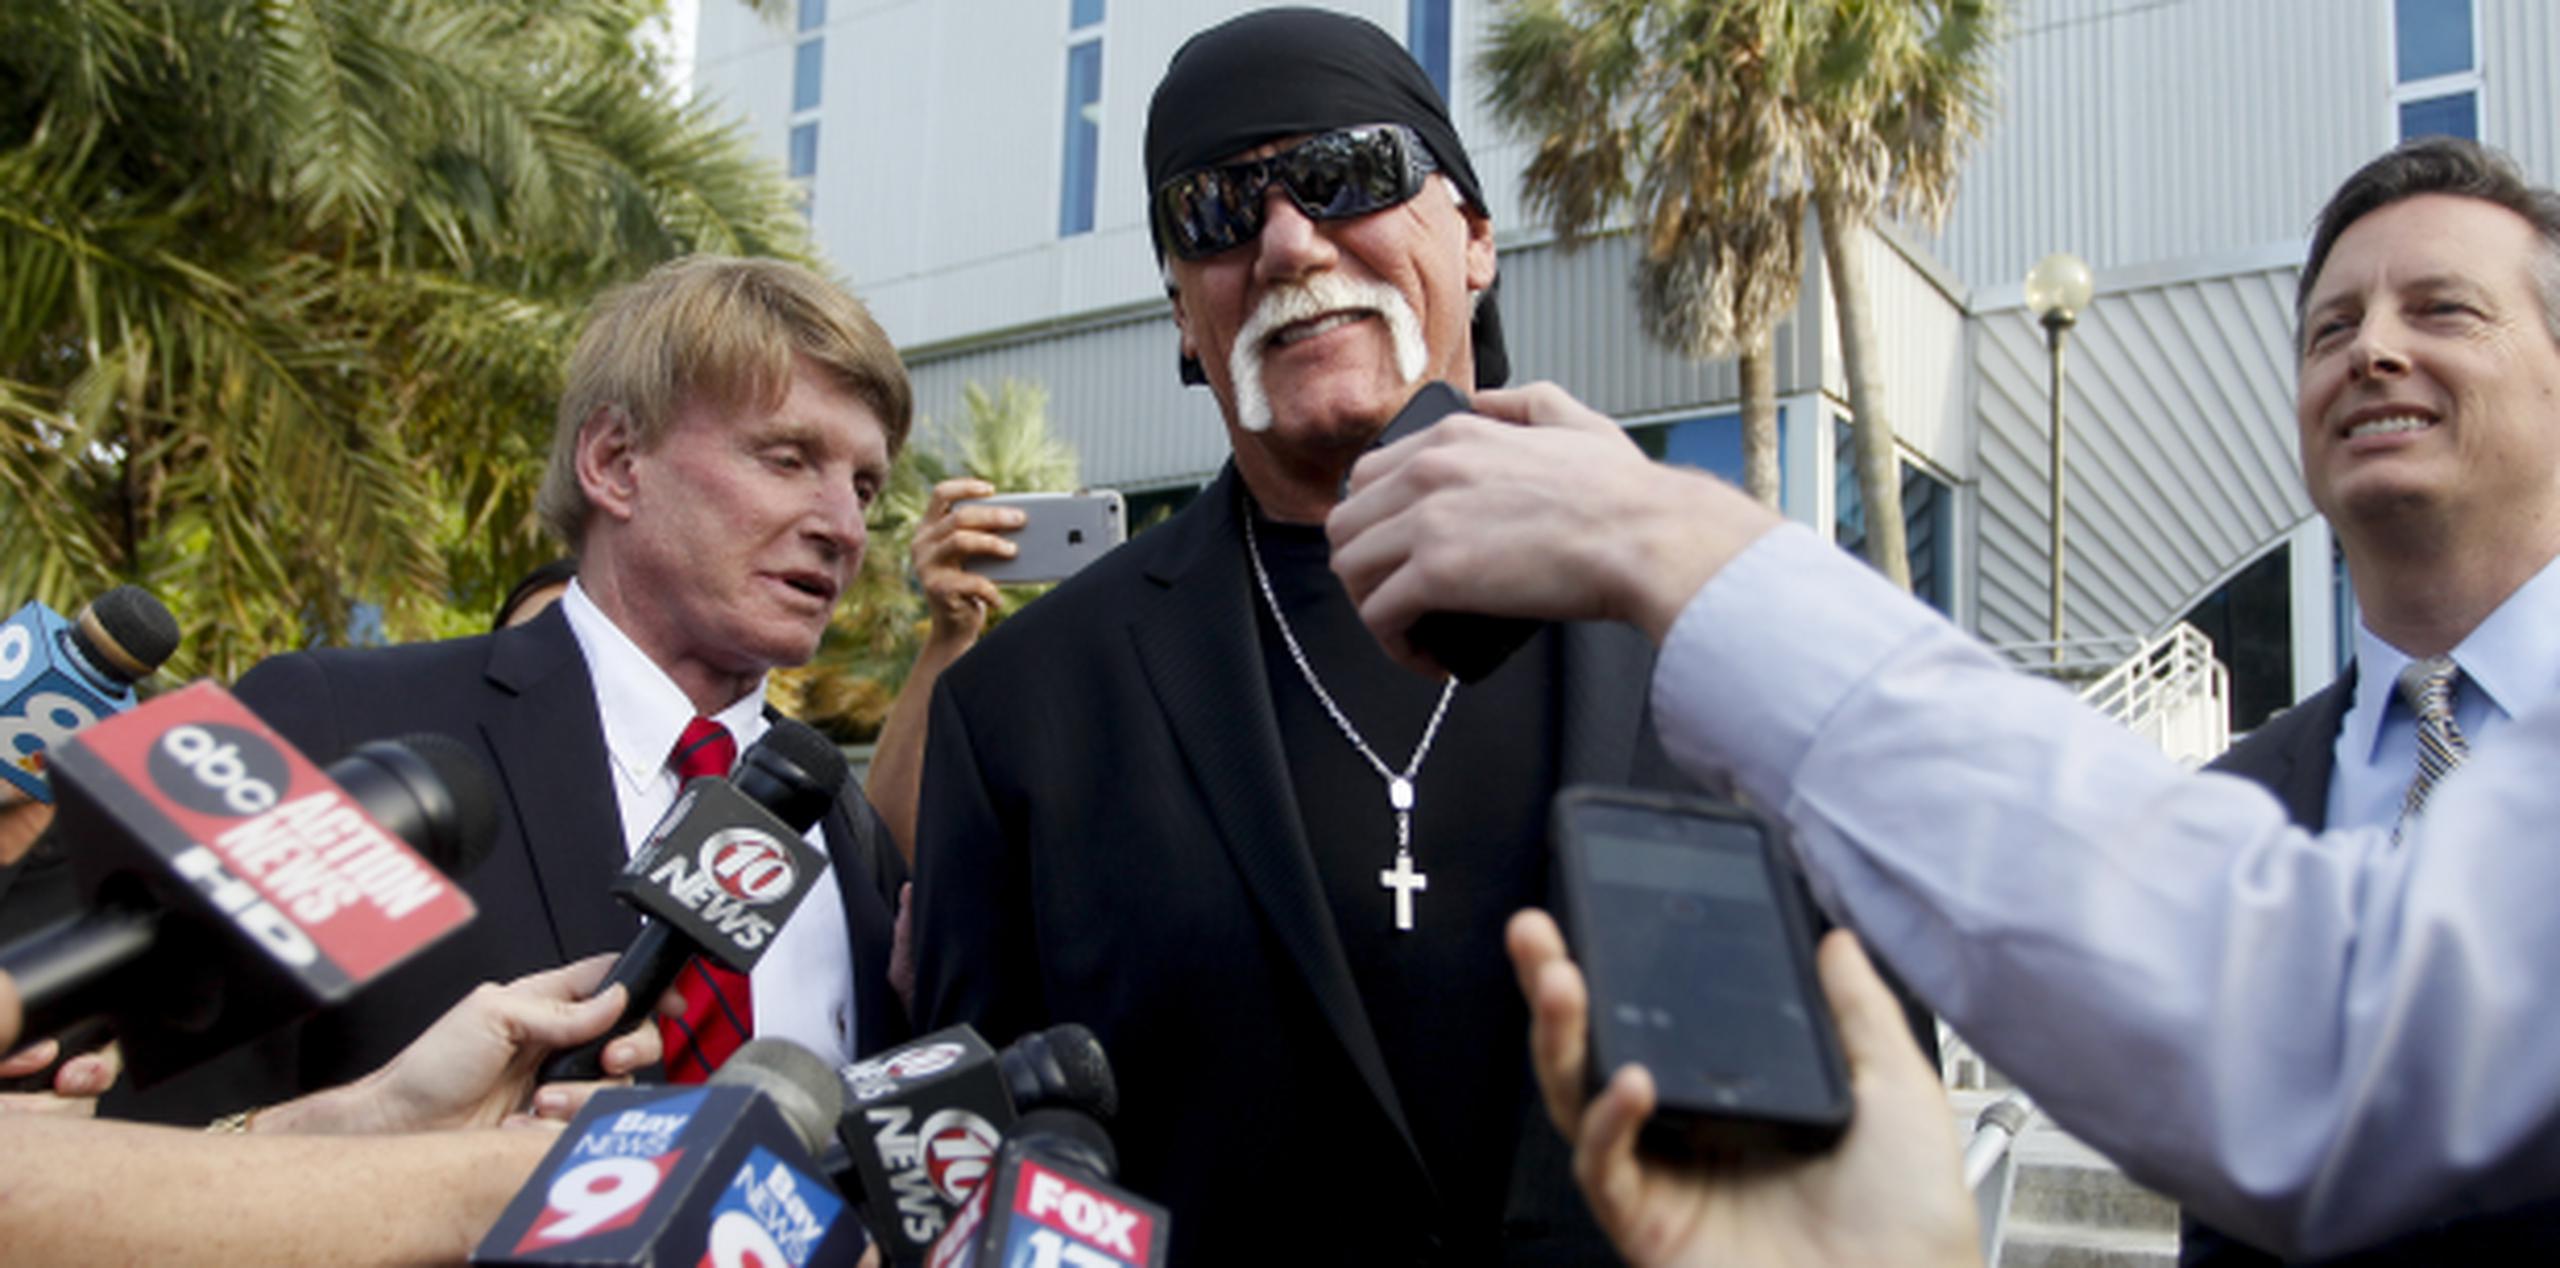 Un sonriente Hogan responde a preguntas de la prensa tras el veredicto adicional a su favor obtenido el lunes. (AP)